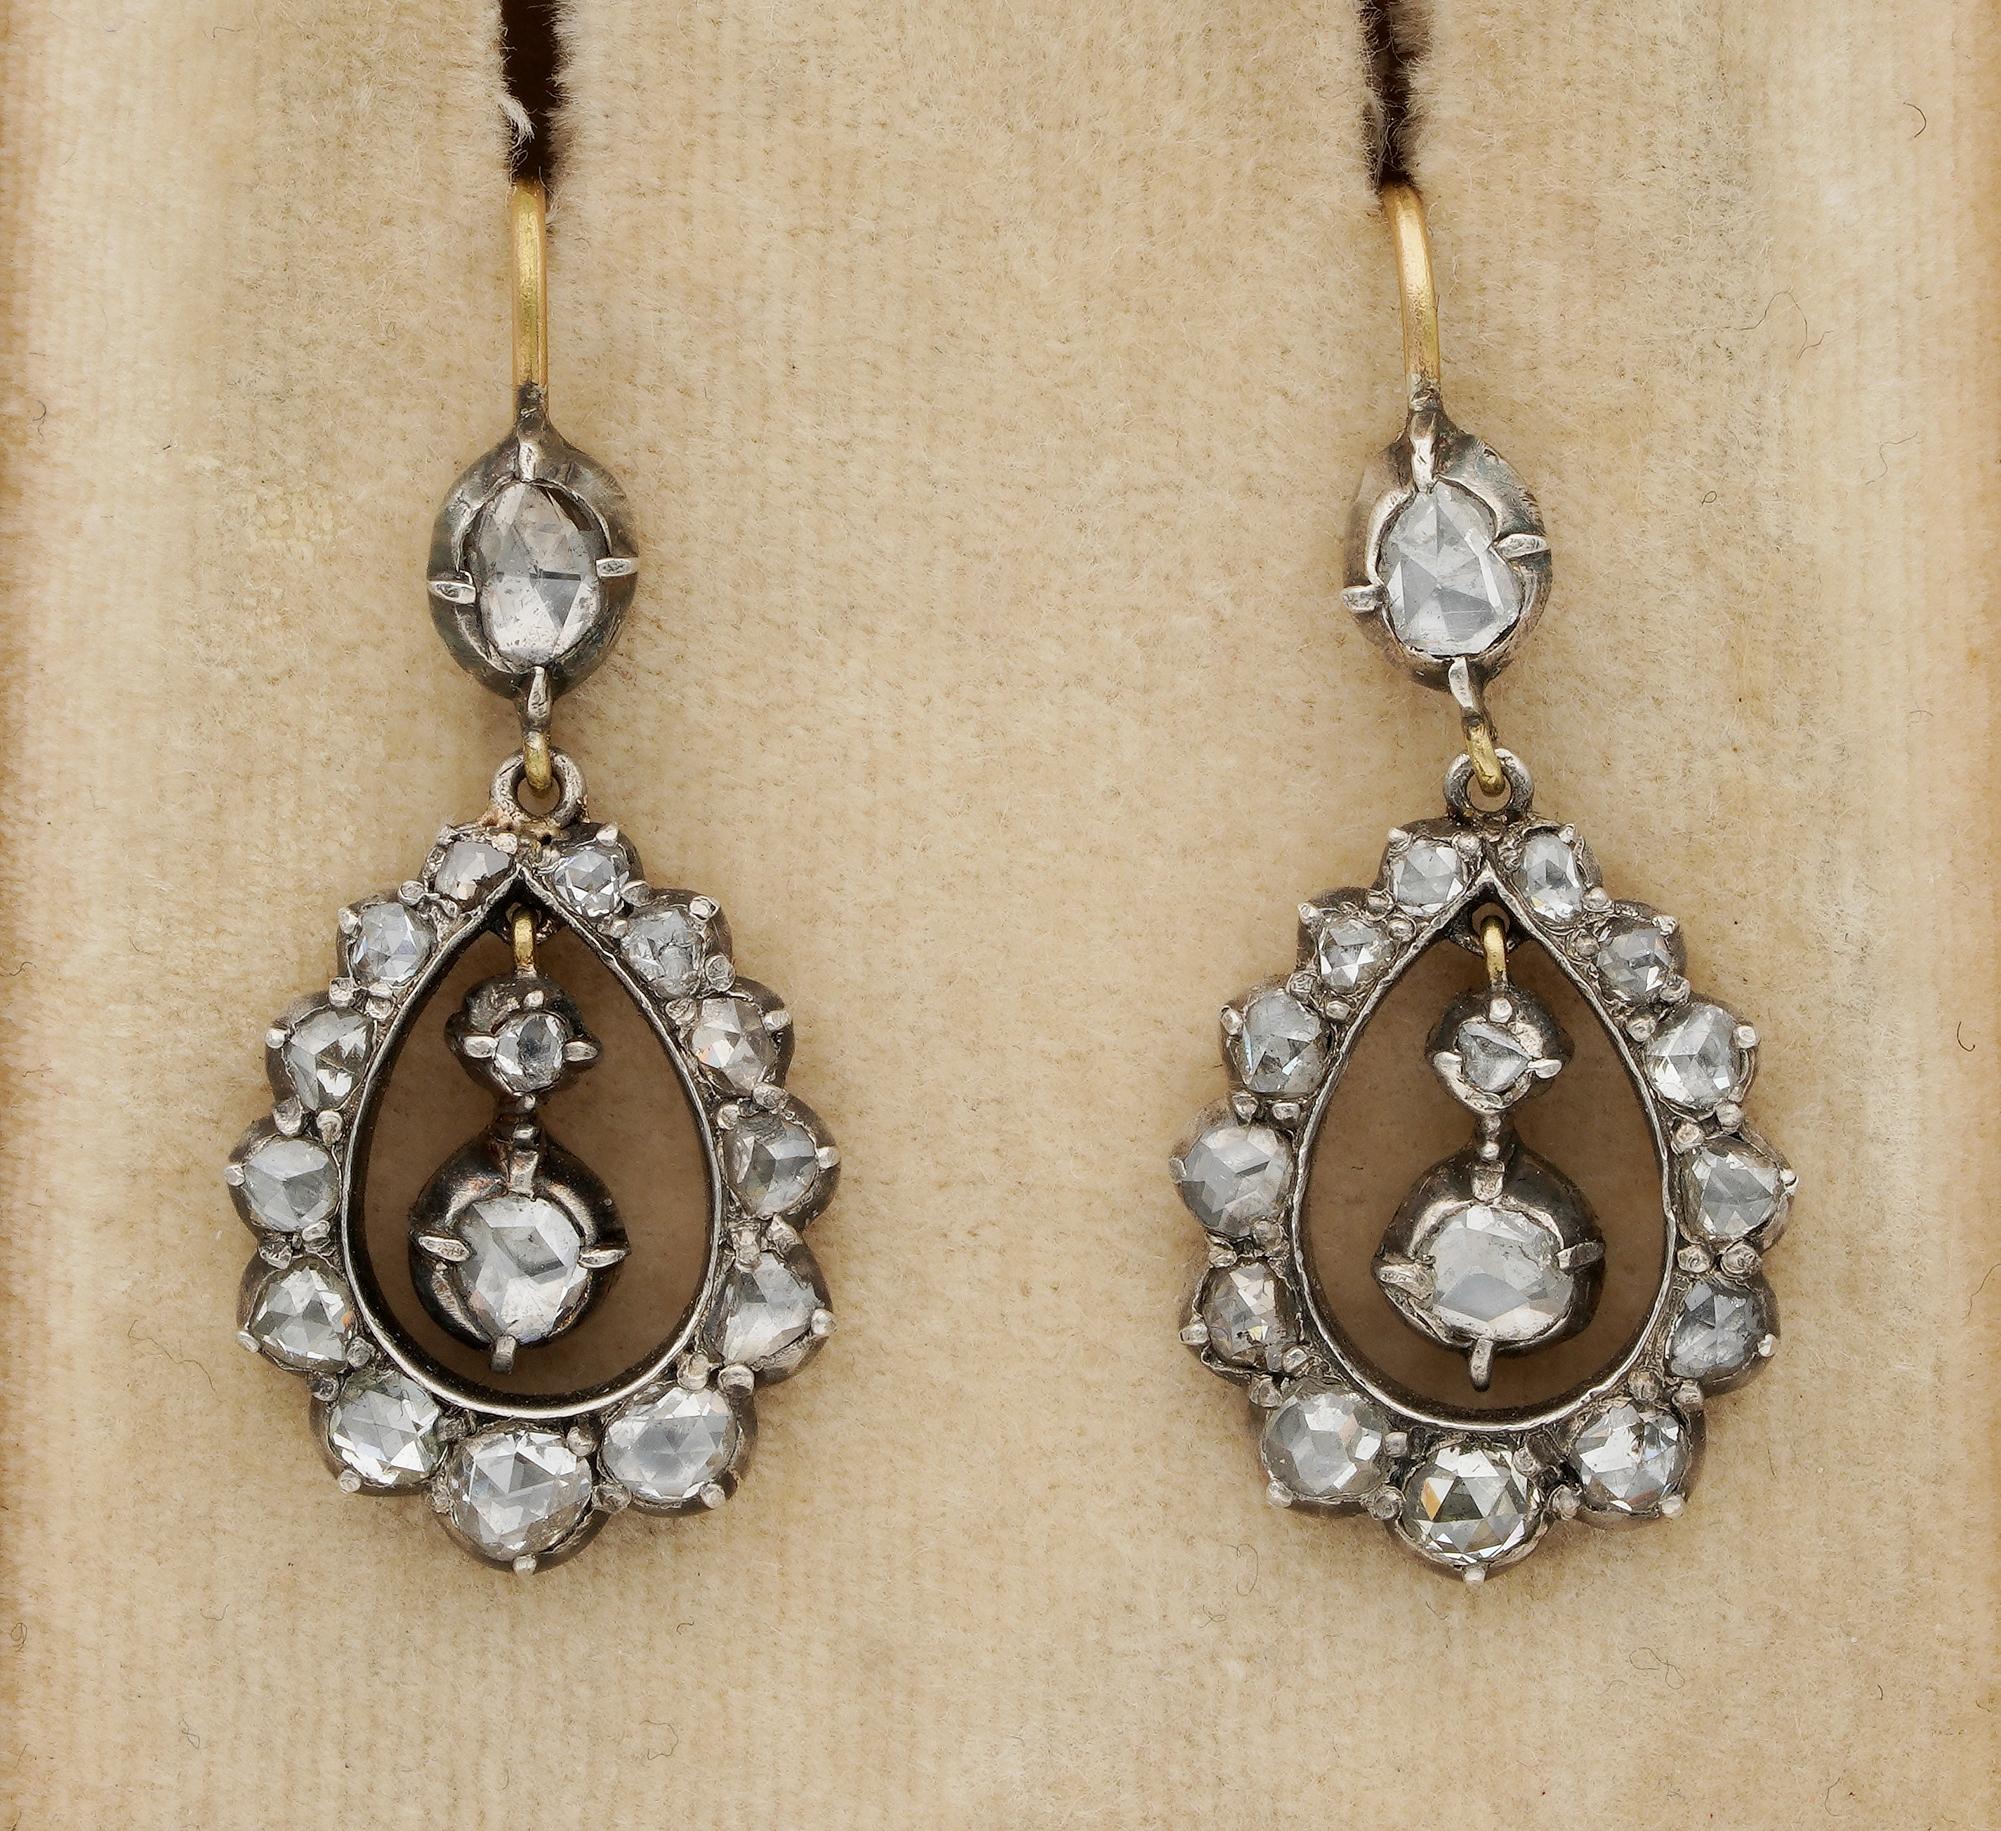 Magnifiques boucles d'oreilles pendantes en diamant d'époque géorgienne, d'un design ravissant.
Dos fermé, fabriqué à la main en or massif 15 KT surmonté d'argent - testé - 1790/1810 env.
Origine anglaise
Articulé pour se balancer sur les oreilles,